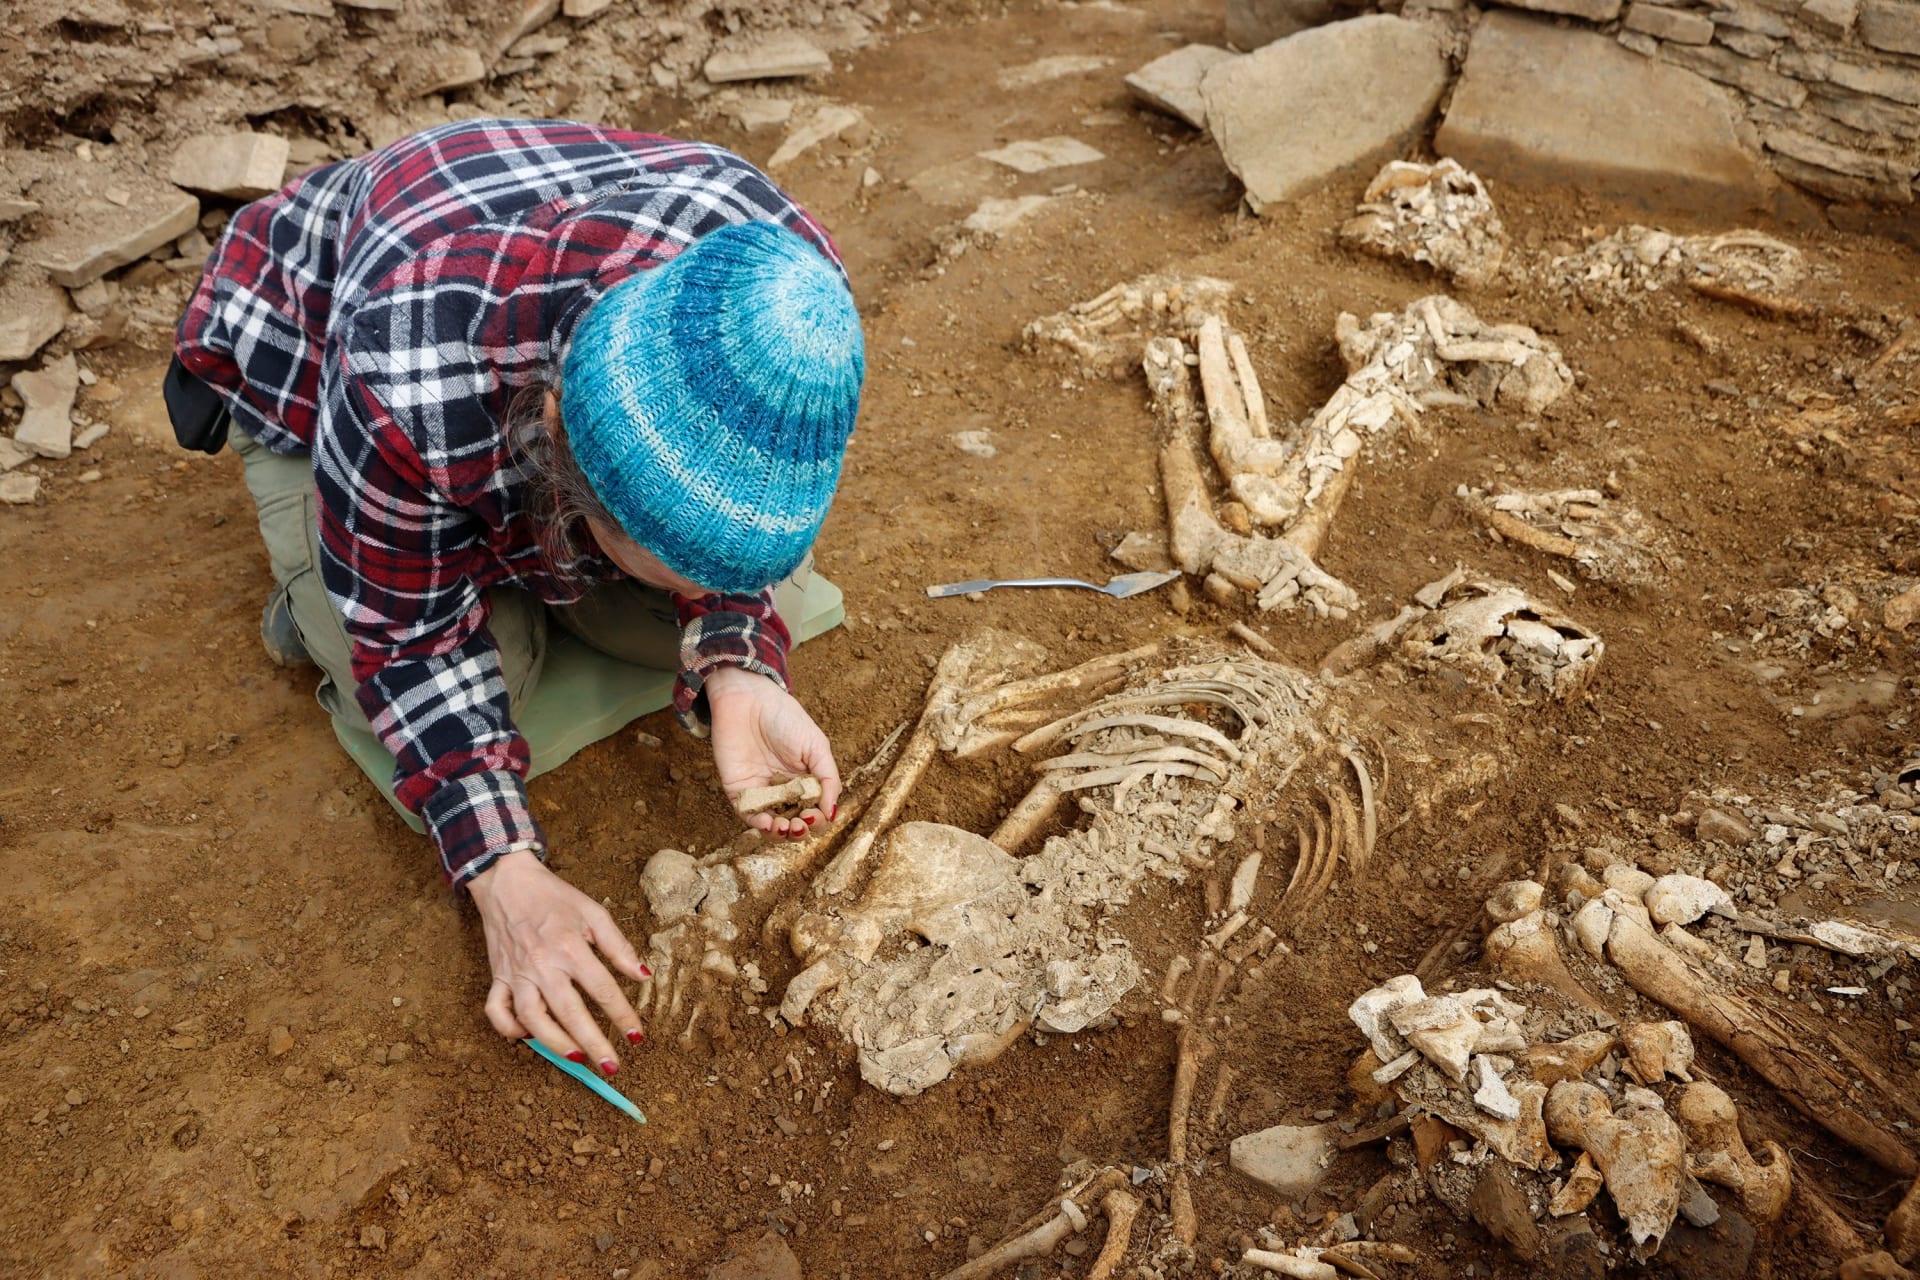  "نادرة بشكل لا يصدق".. اكتشاف هياكل عظمية في مقبرة اسكتلندية عمرها 5 آلاف عام